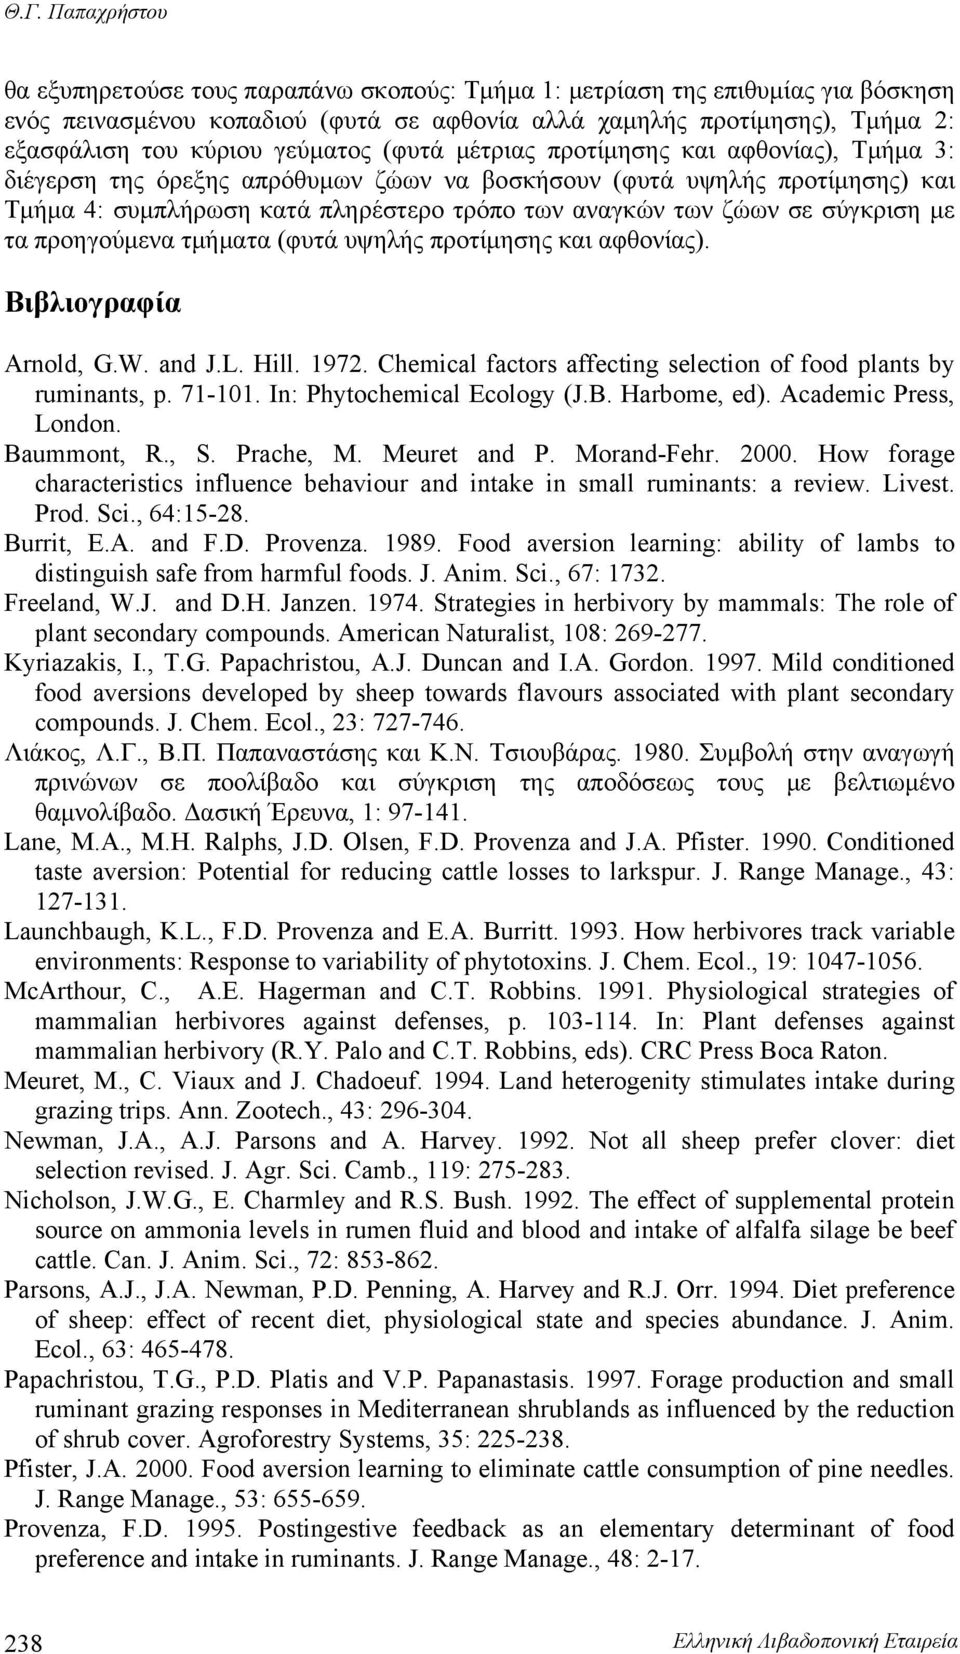 σε σύγκριση με τα προηγούμενα τμήματα (φυτά υψηλής προτίμησης και αφθονίας). Βιβλιογραφία Arnold, G.W. and J.L. Hill. 1972. Chemical factors affecting selection of food plants by ruminants, p. 71-101.